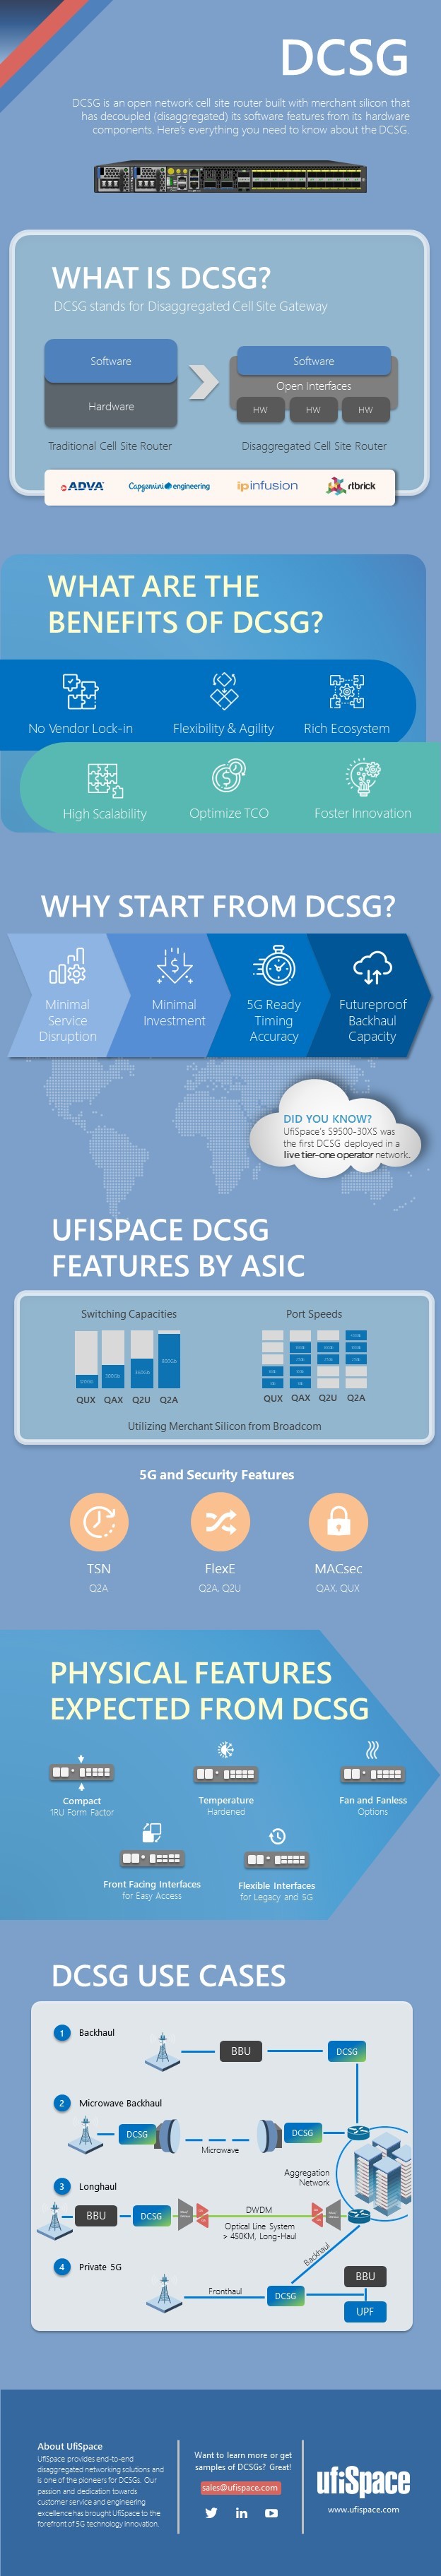 UfiSpace DCSG Infographic